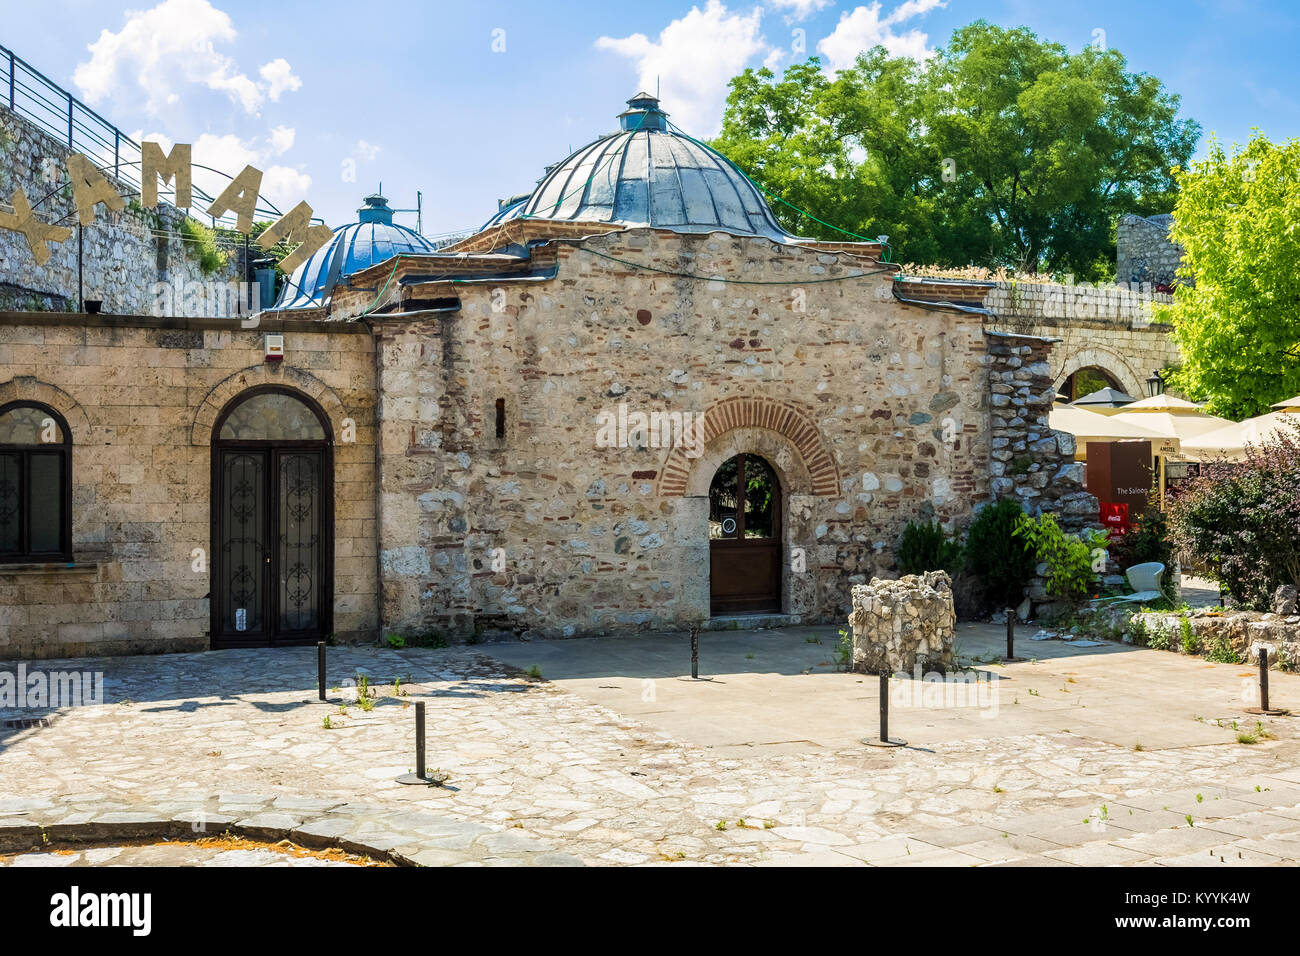 Le Hammam (bain turc), maintenant un restaurant, dans la forteresse de Nis, Nis, Serbie Banque D'Images